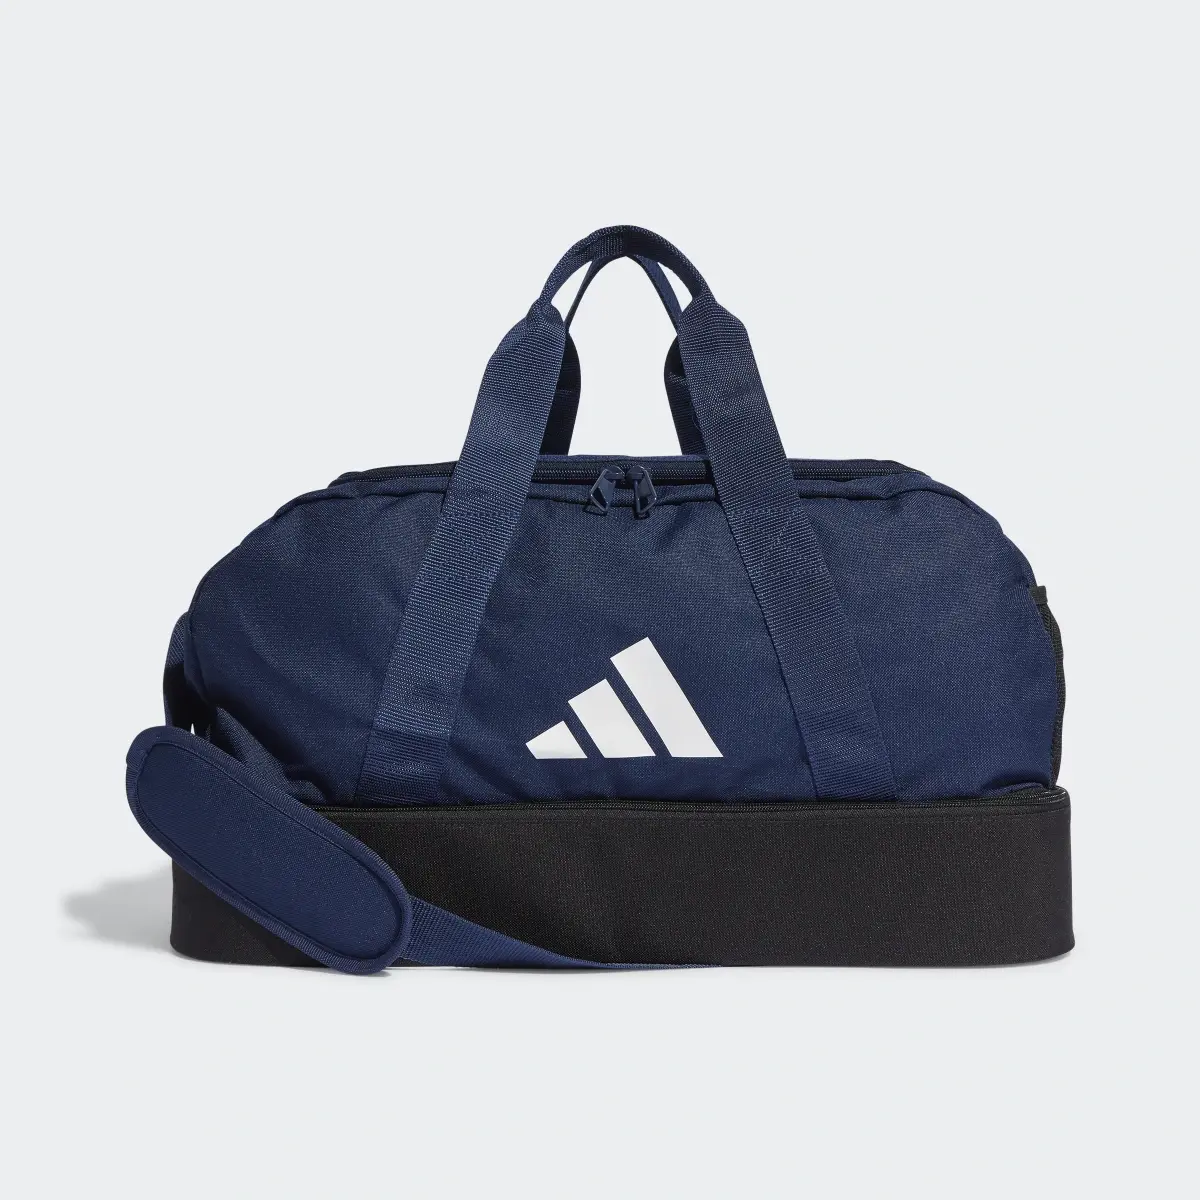 Adidas Tiro League Duffelbag S. 2